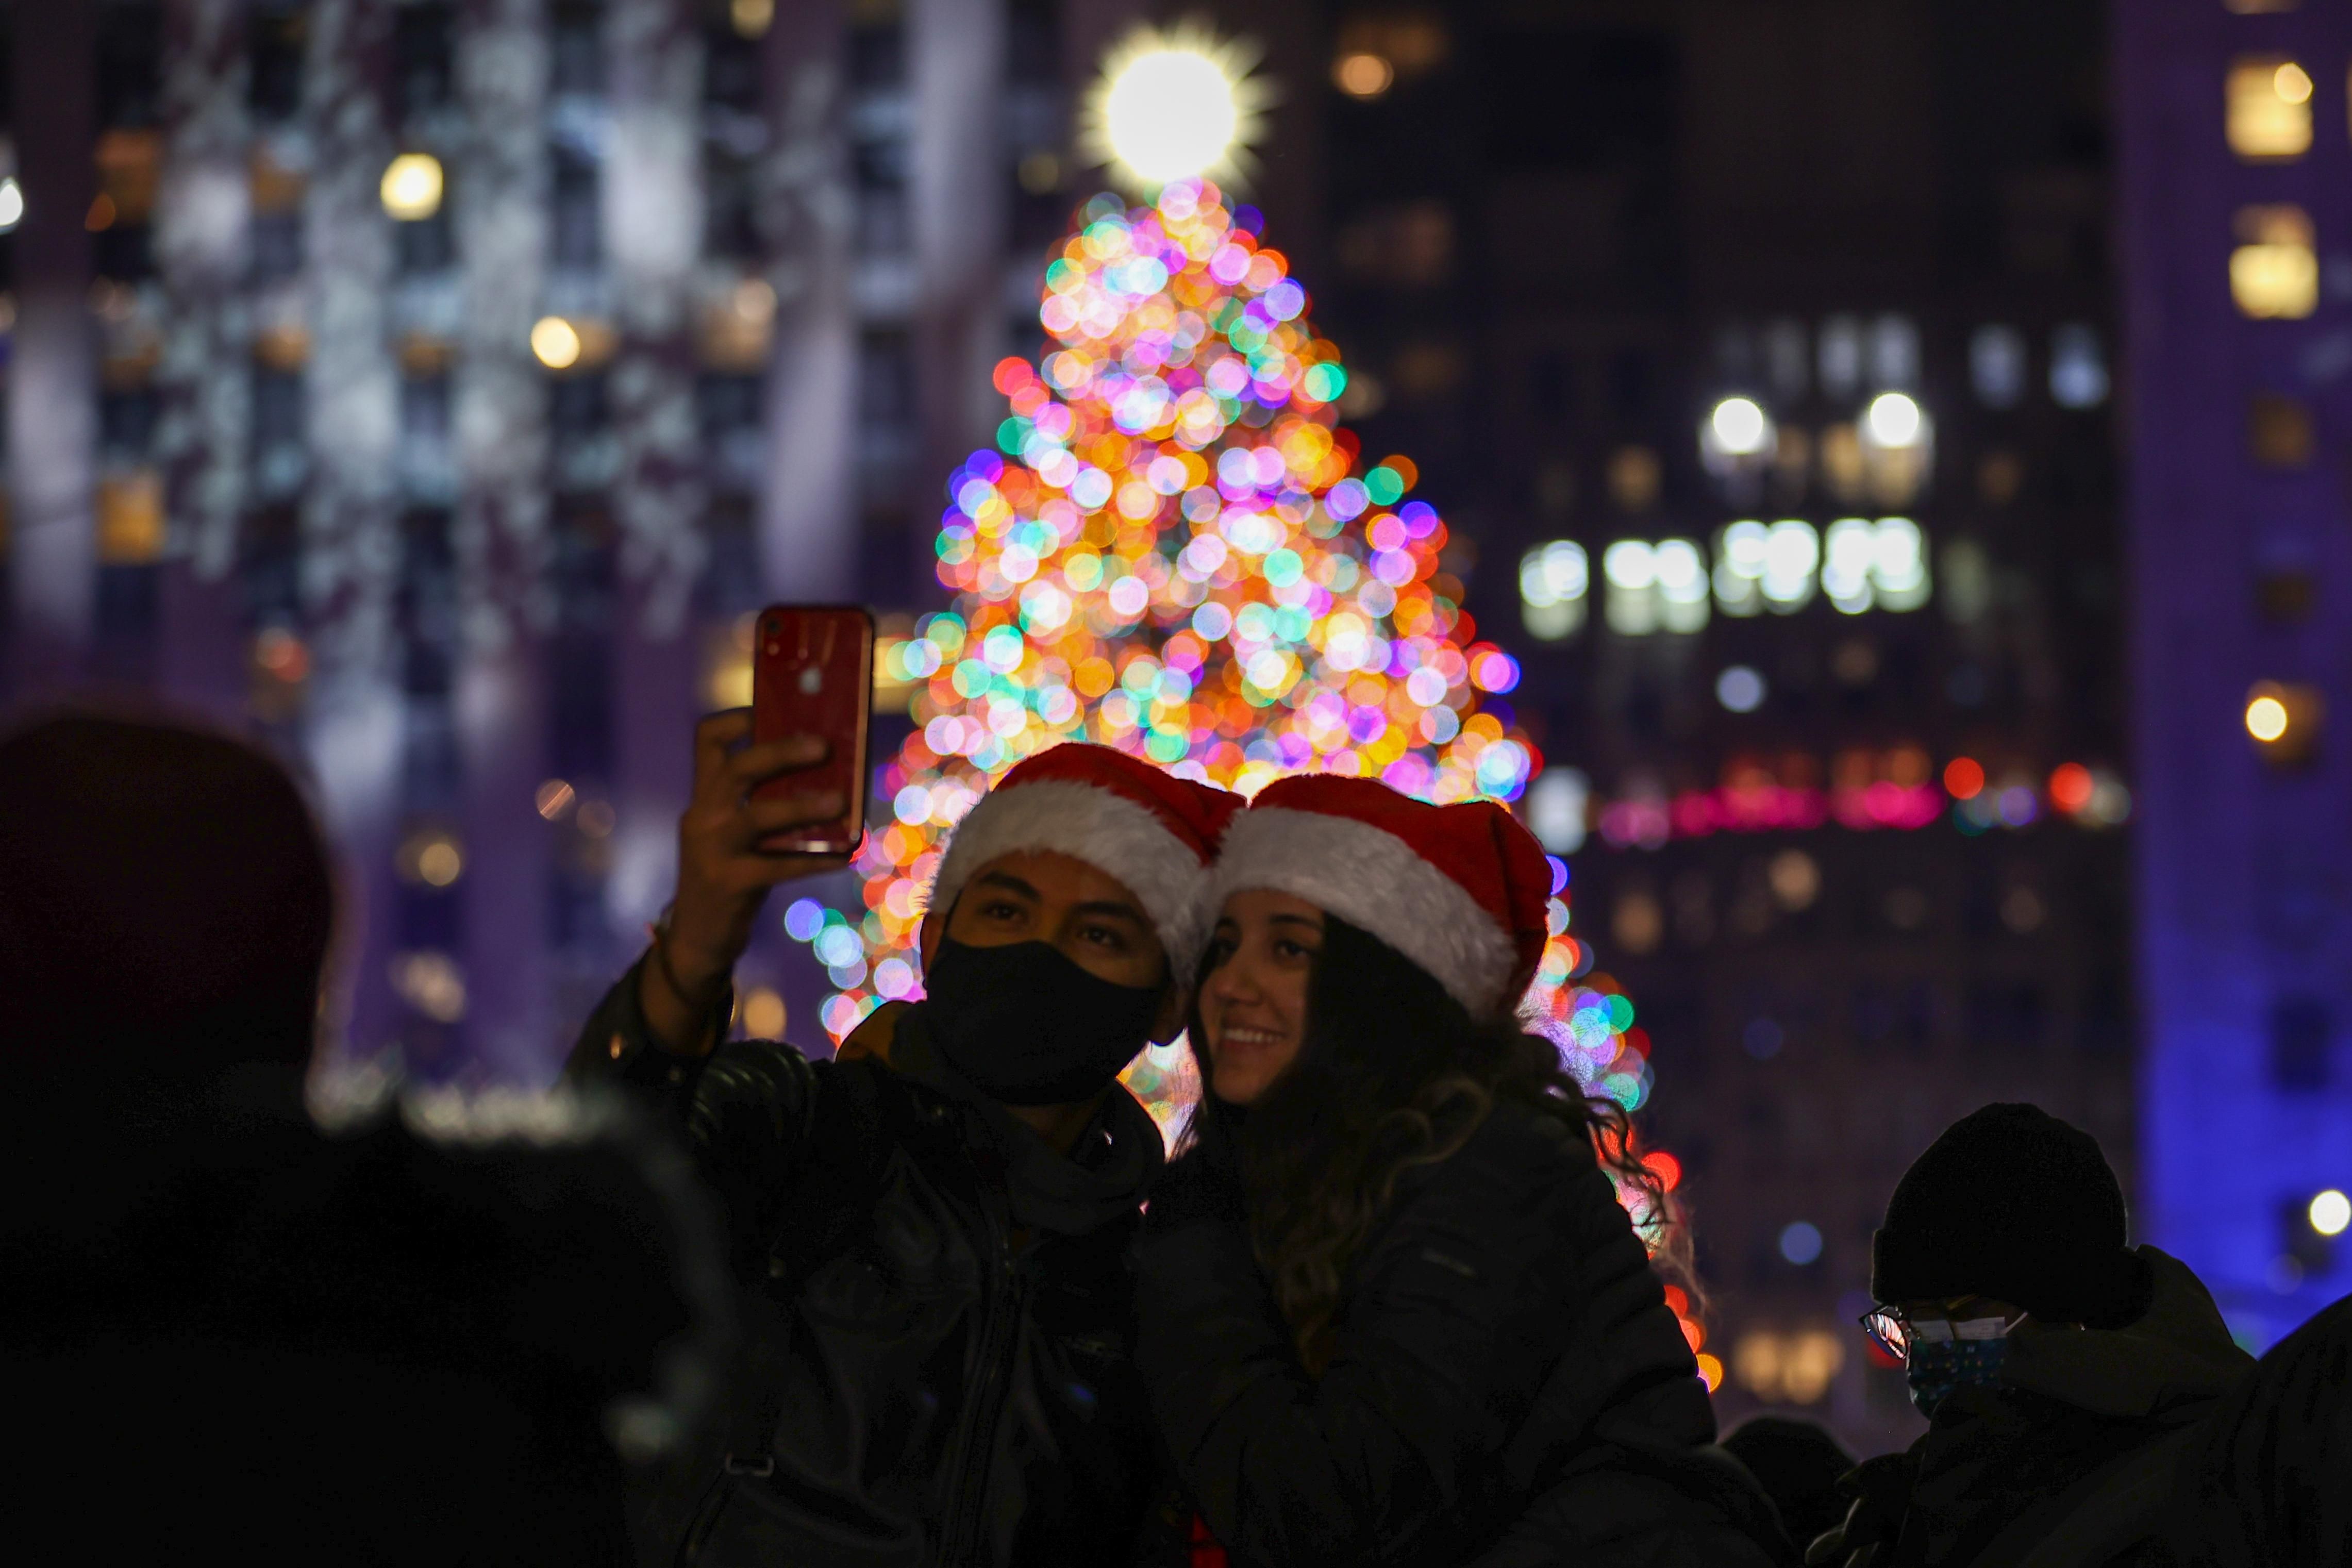 Засветилась главная елка Нью-Йорка возле Рокфеллер-центра: яркие фото и видео